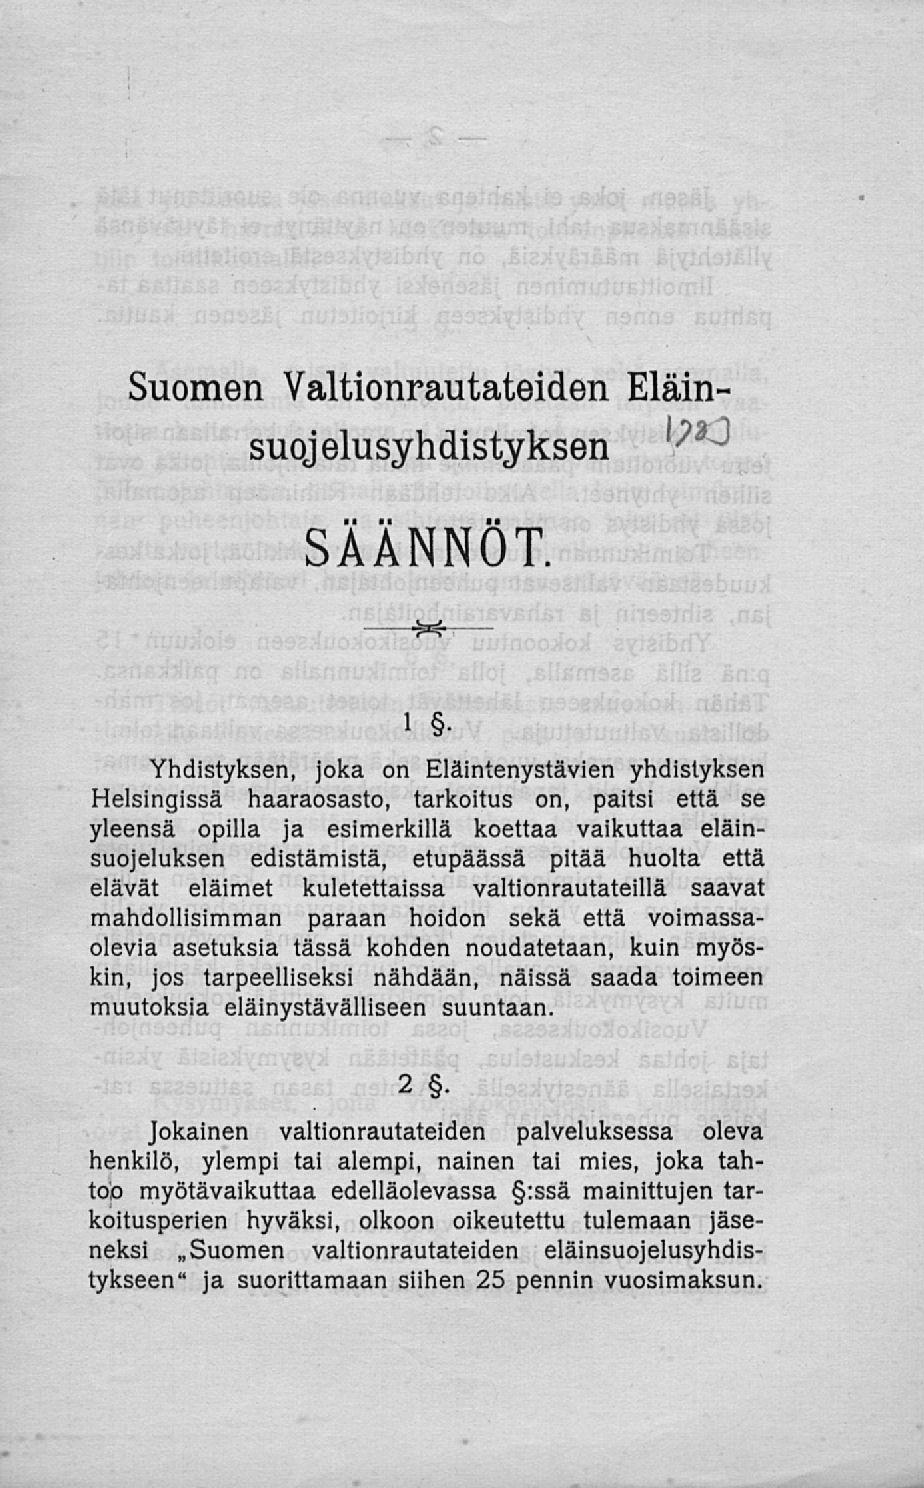 SÄÄNNÖT. Suomen Valtionrautateiden Eläinsuojelusyhdistyksen ^.